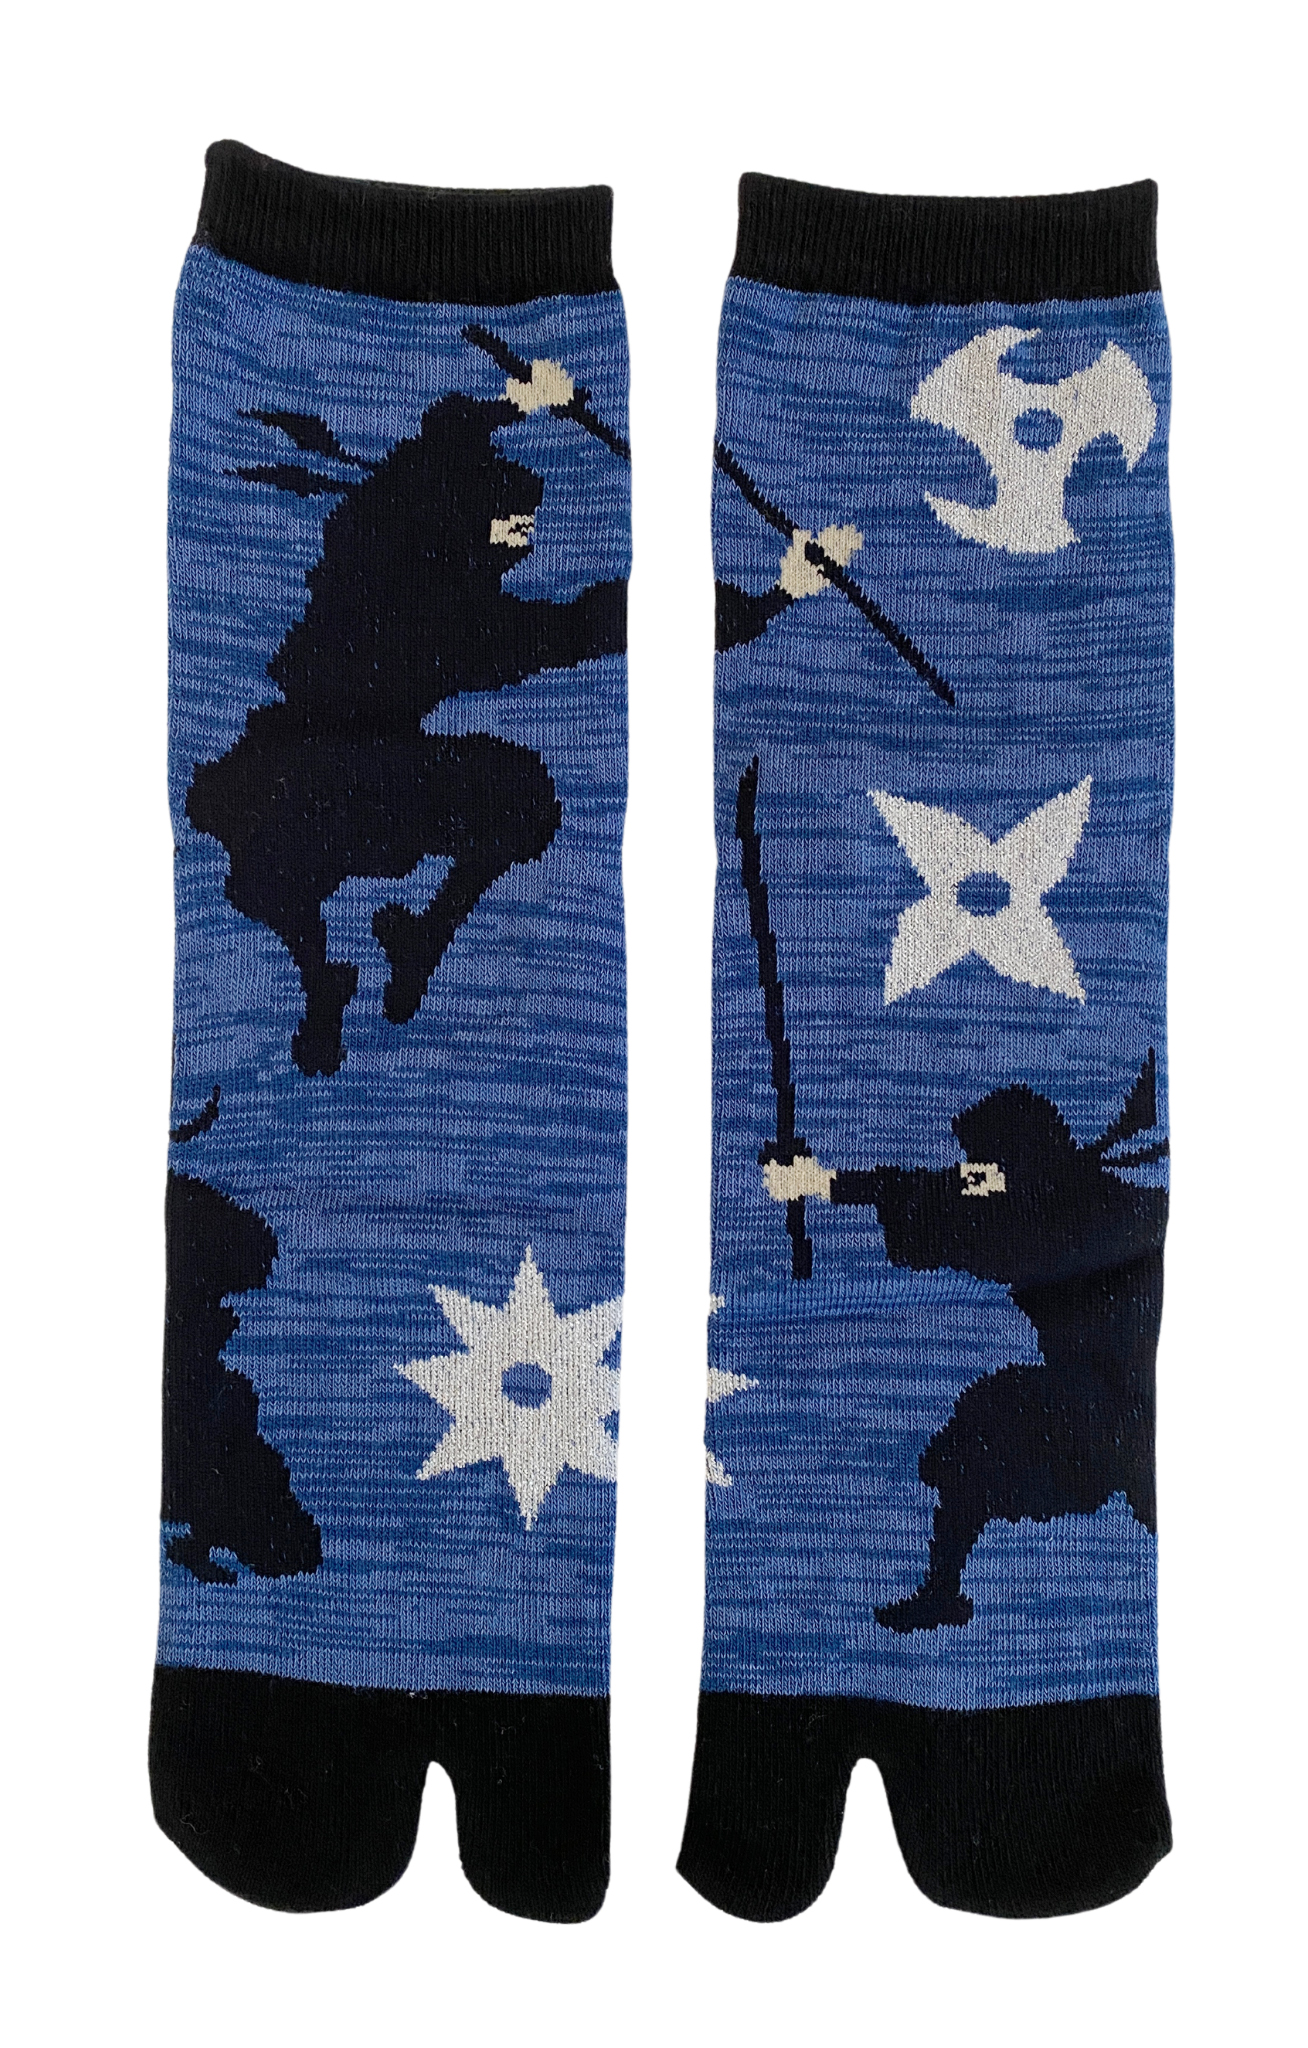 5392 blue ninja tabi toe socks japan